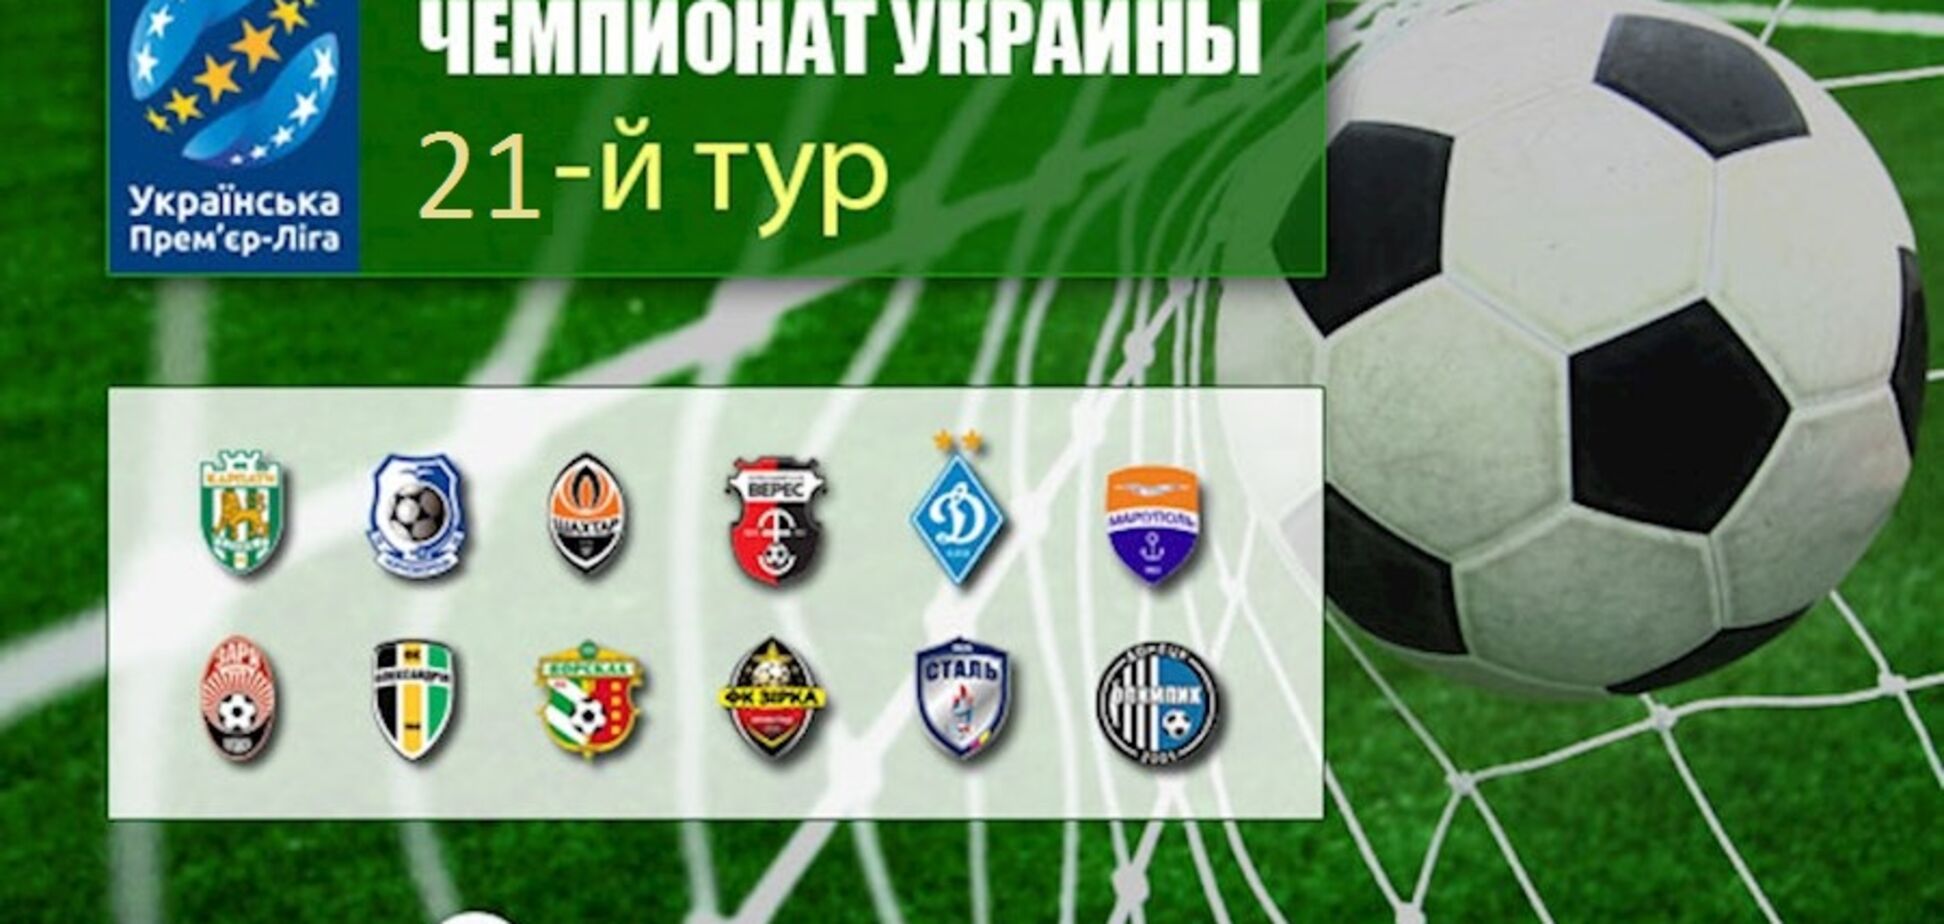 21-й тур чемпіонату України з футболу: результати, огляди, турнірна таблиця